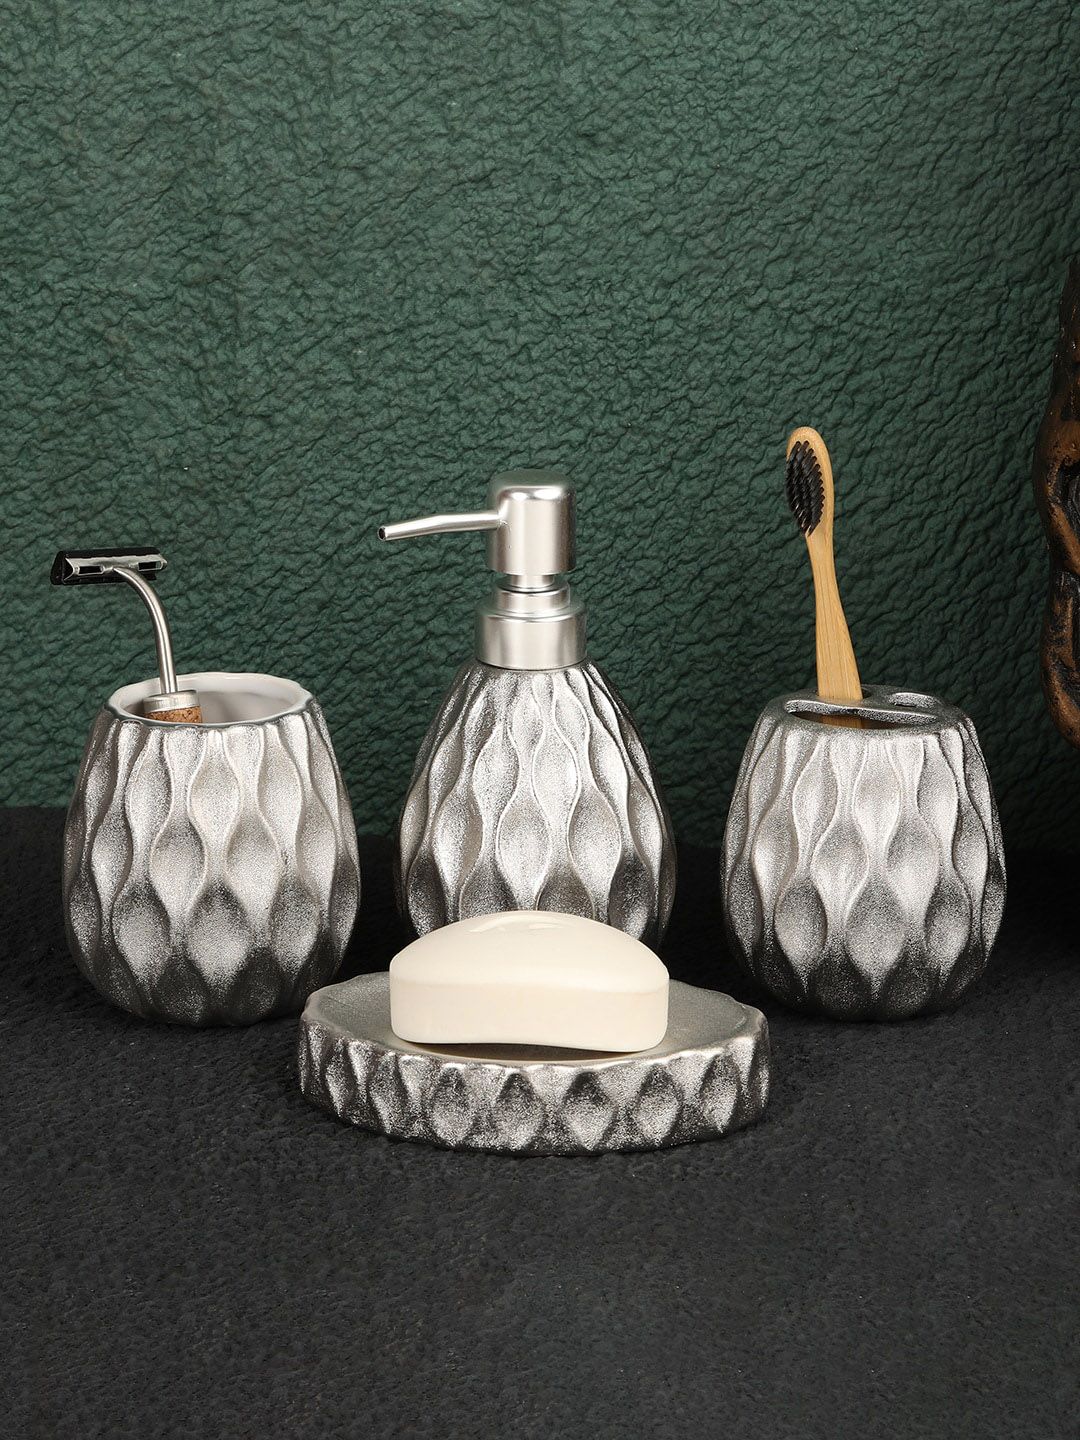 ROMEE 4 Pieces Silver Textured Ceramic Bathroom Accessories Set Price in India